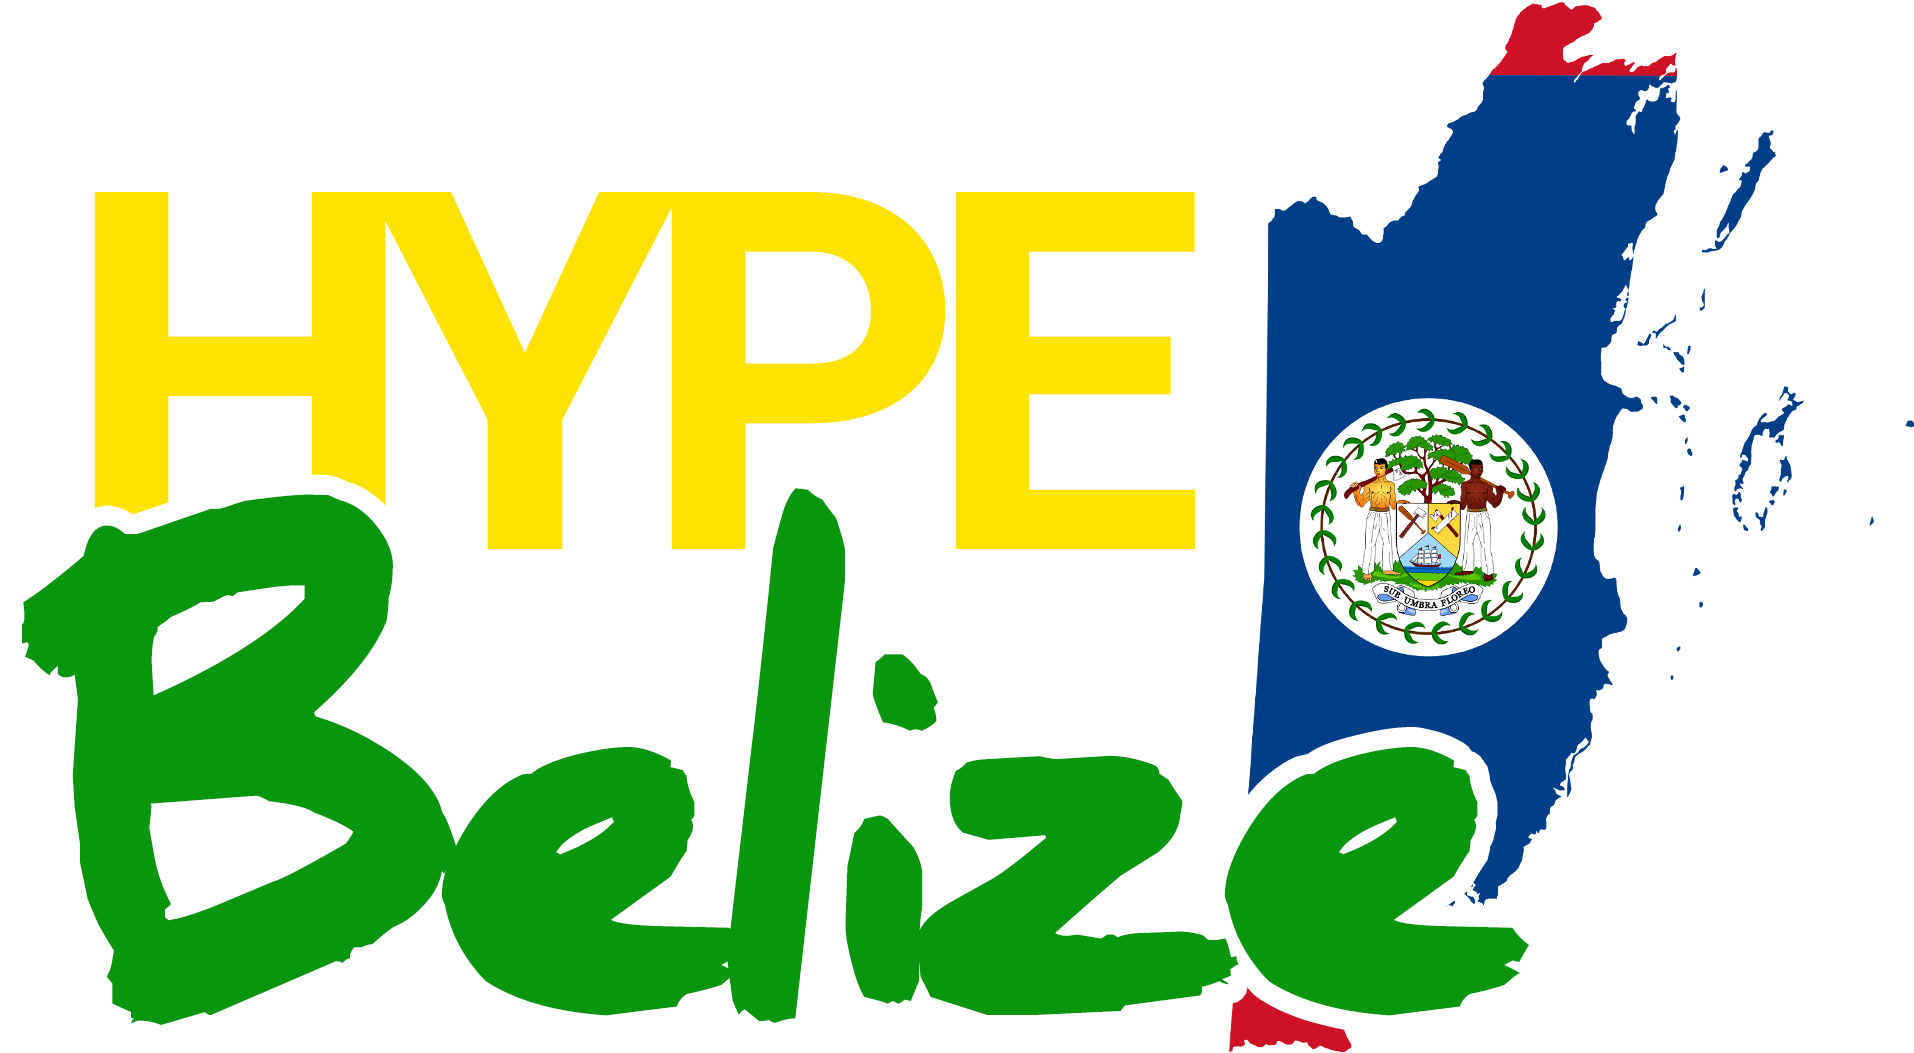 Hype Belize - Belize (2042x1179)